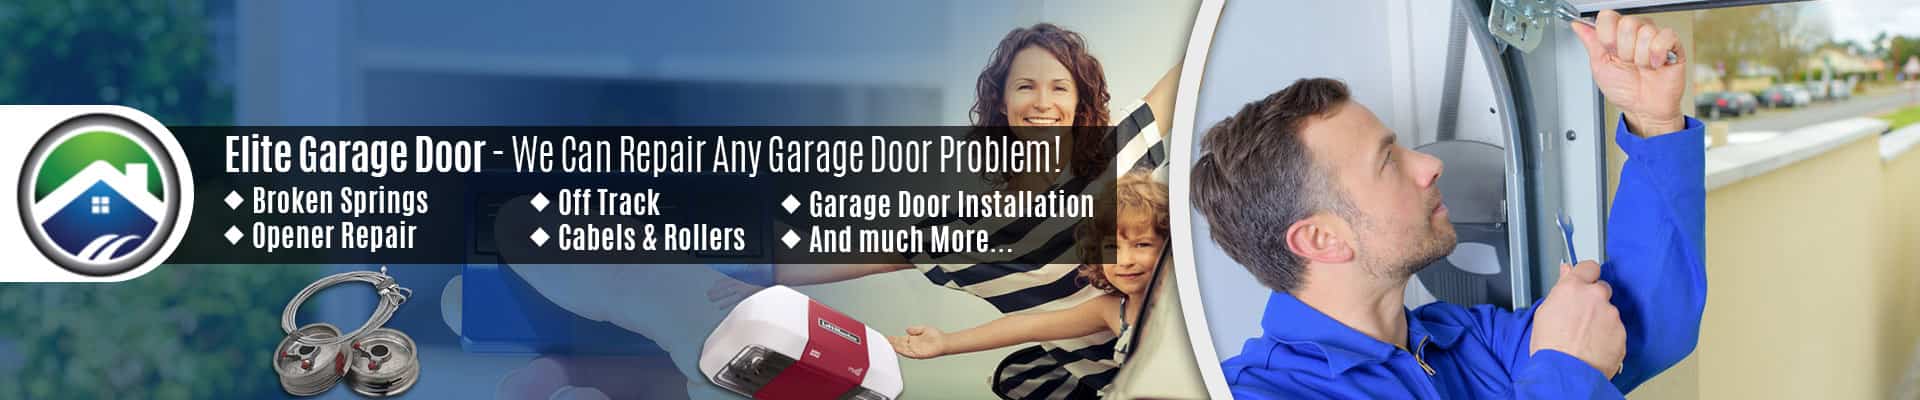 Commercial Garage Door Repair Service In Lynnwood - Elite Garage Door Of Lynnwood